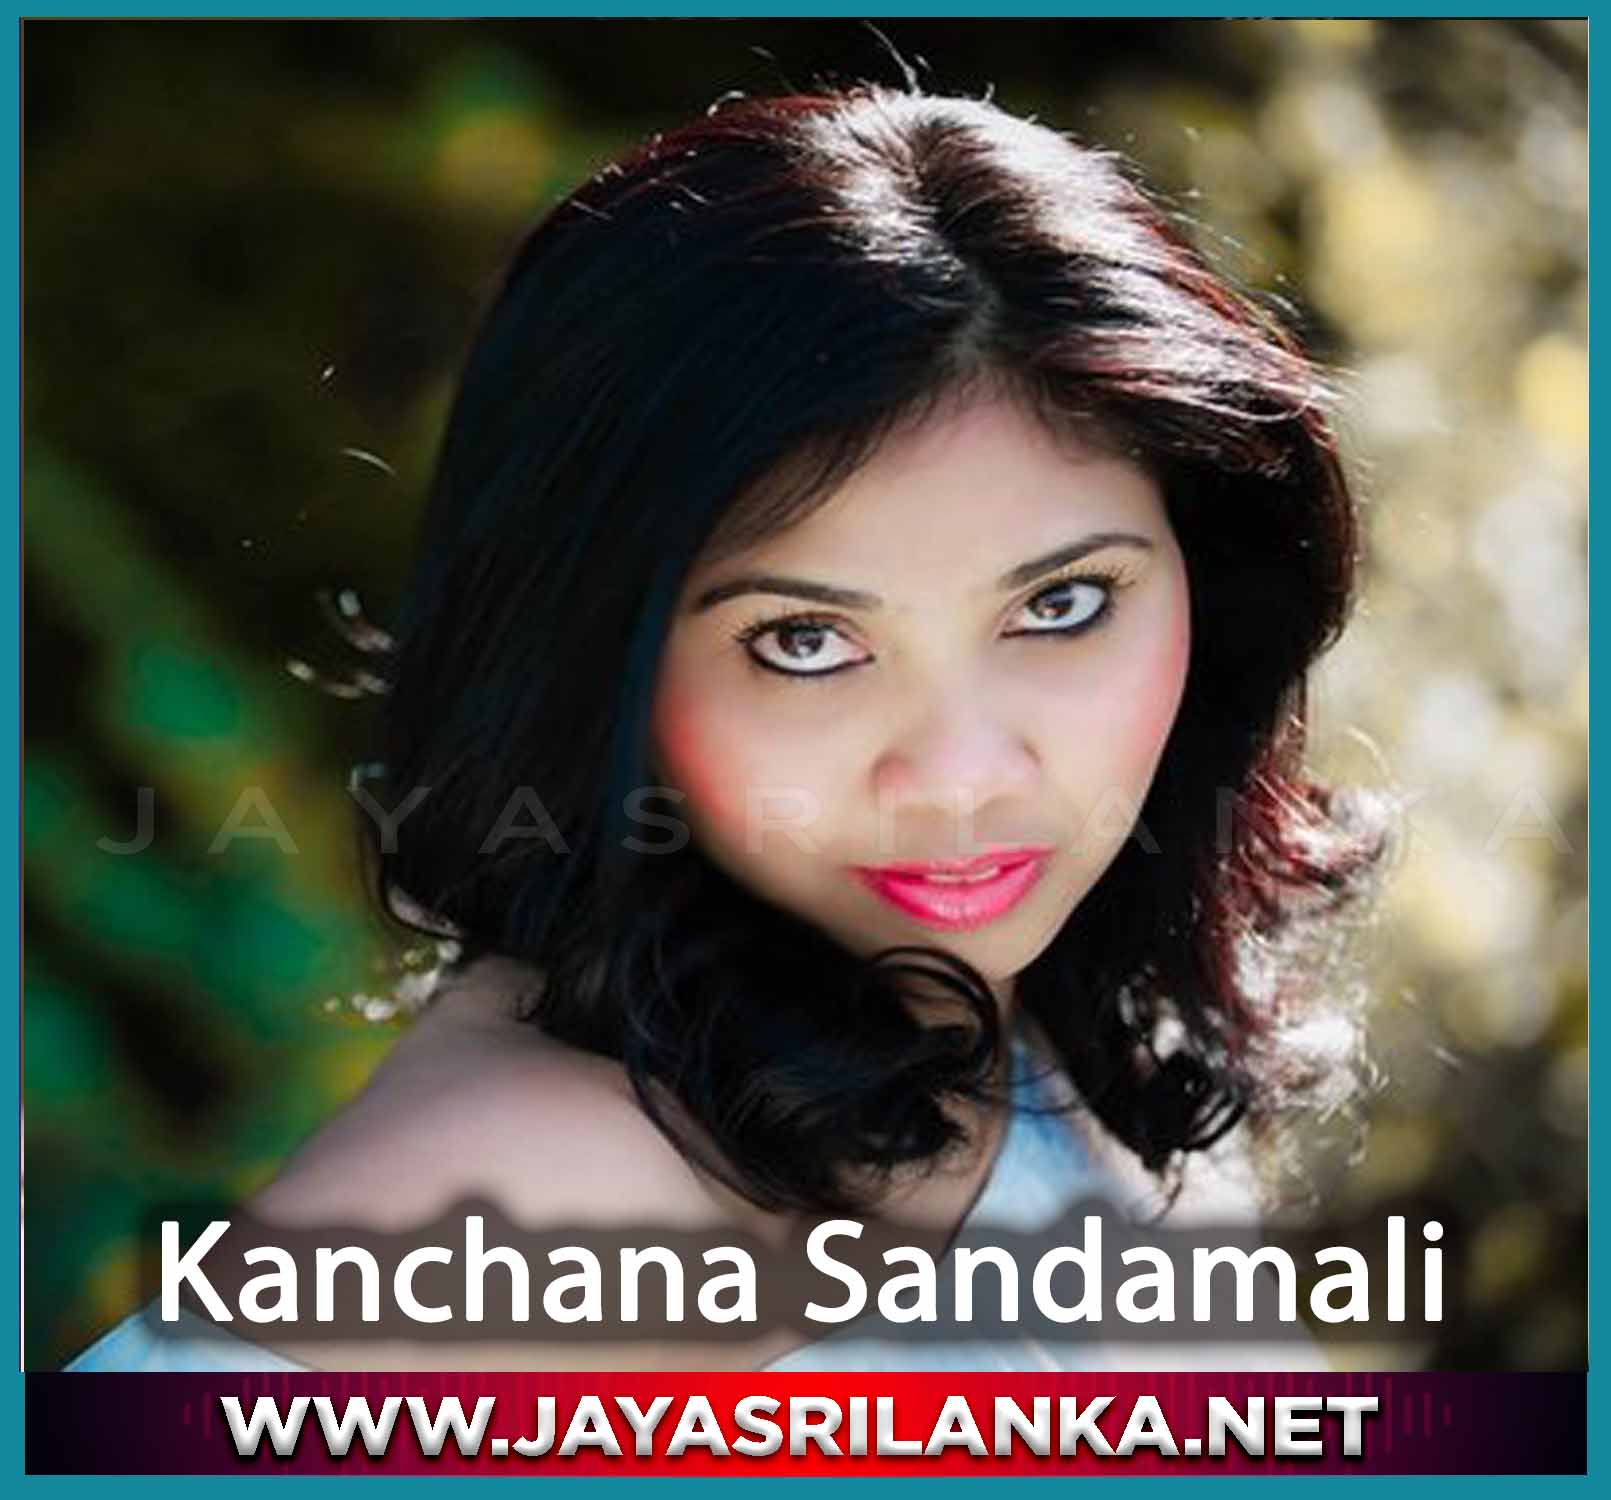 Sapu Dunuke Salalana - Kanchana Sandamali mp3 Image